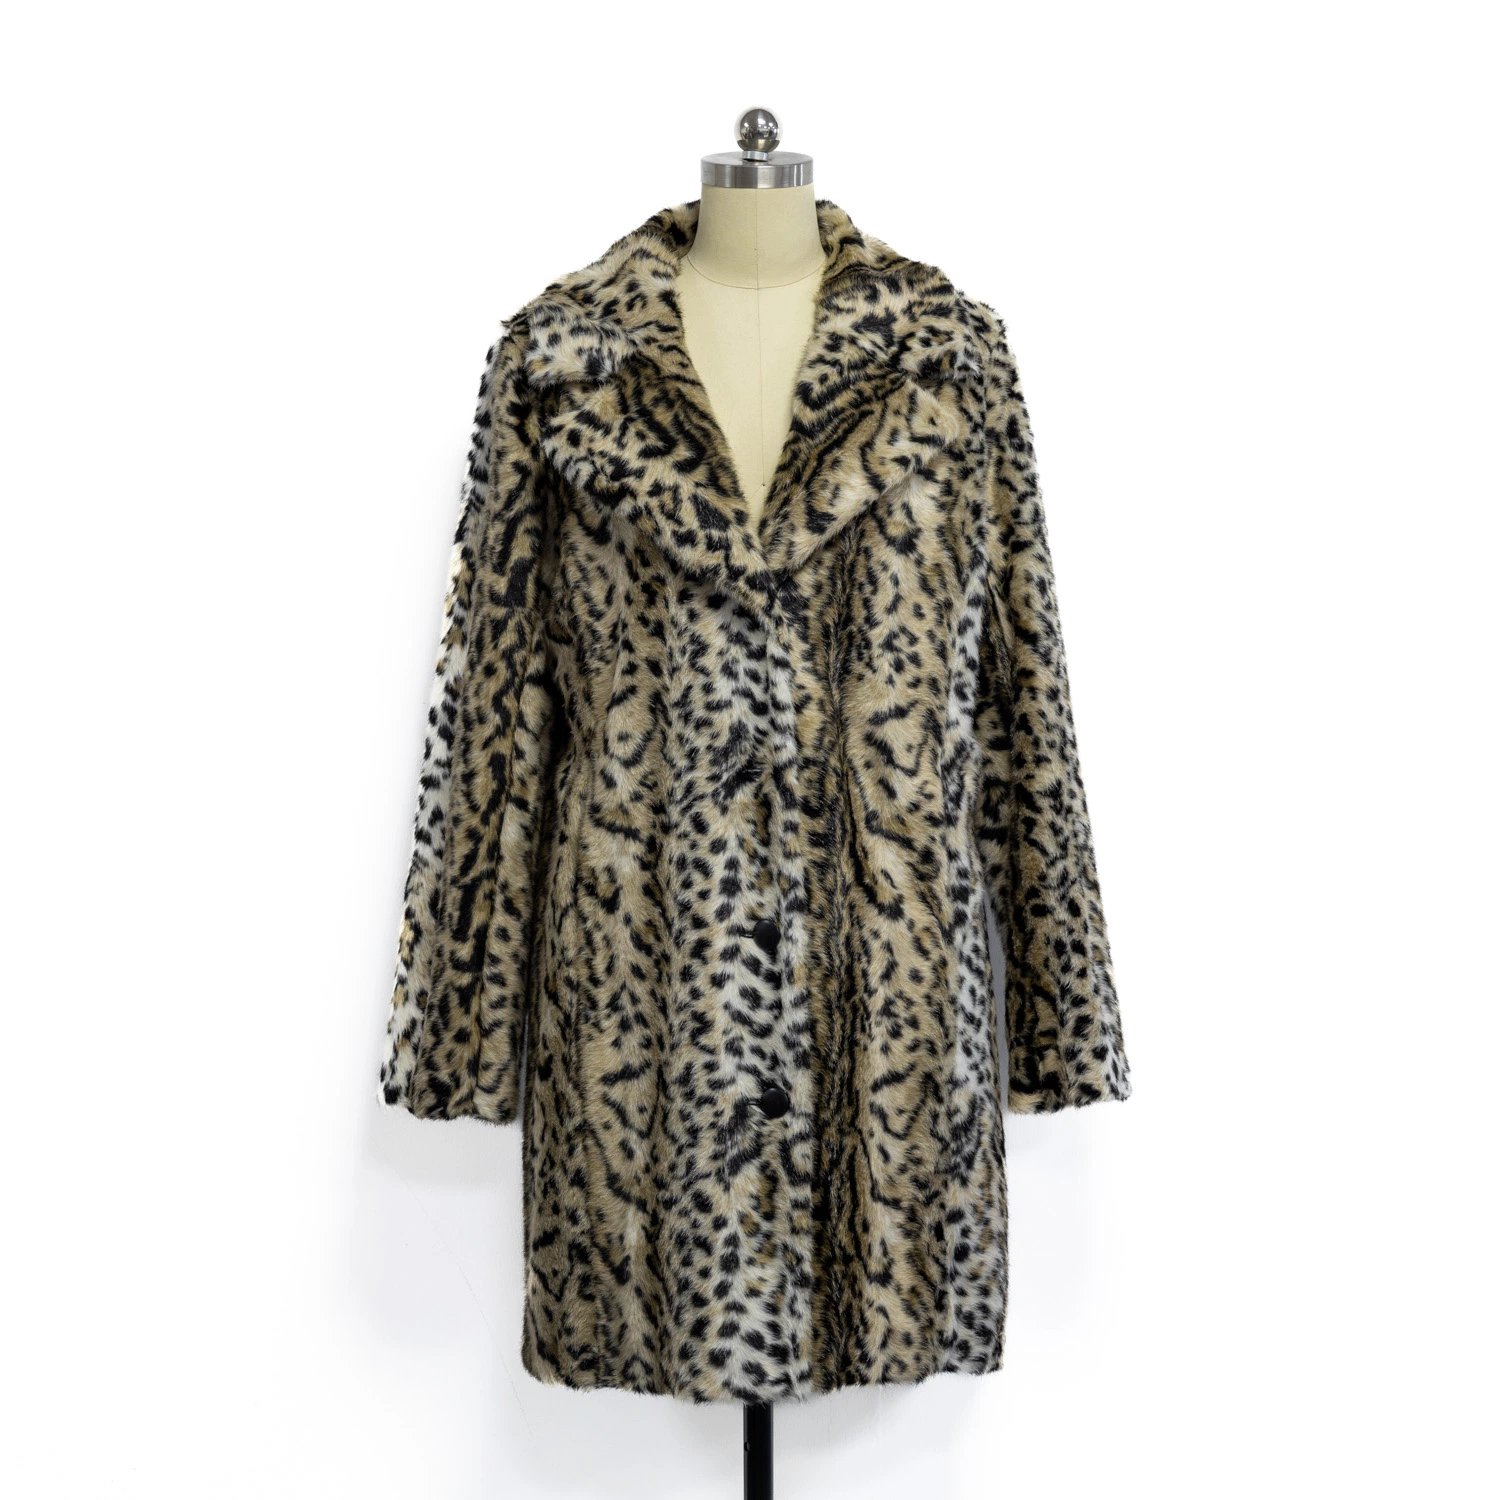 Wholesale Winter Women Faux Fur Jacket Long Sleeves Leopard Print Fashion Coat